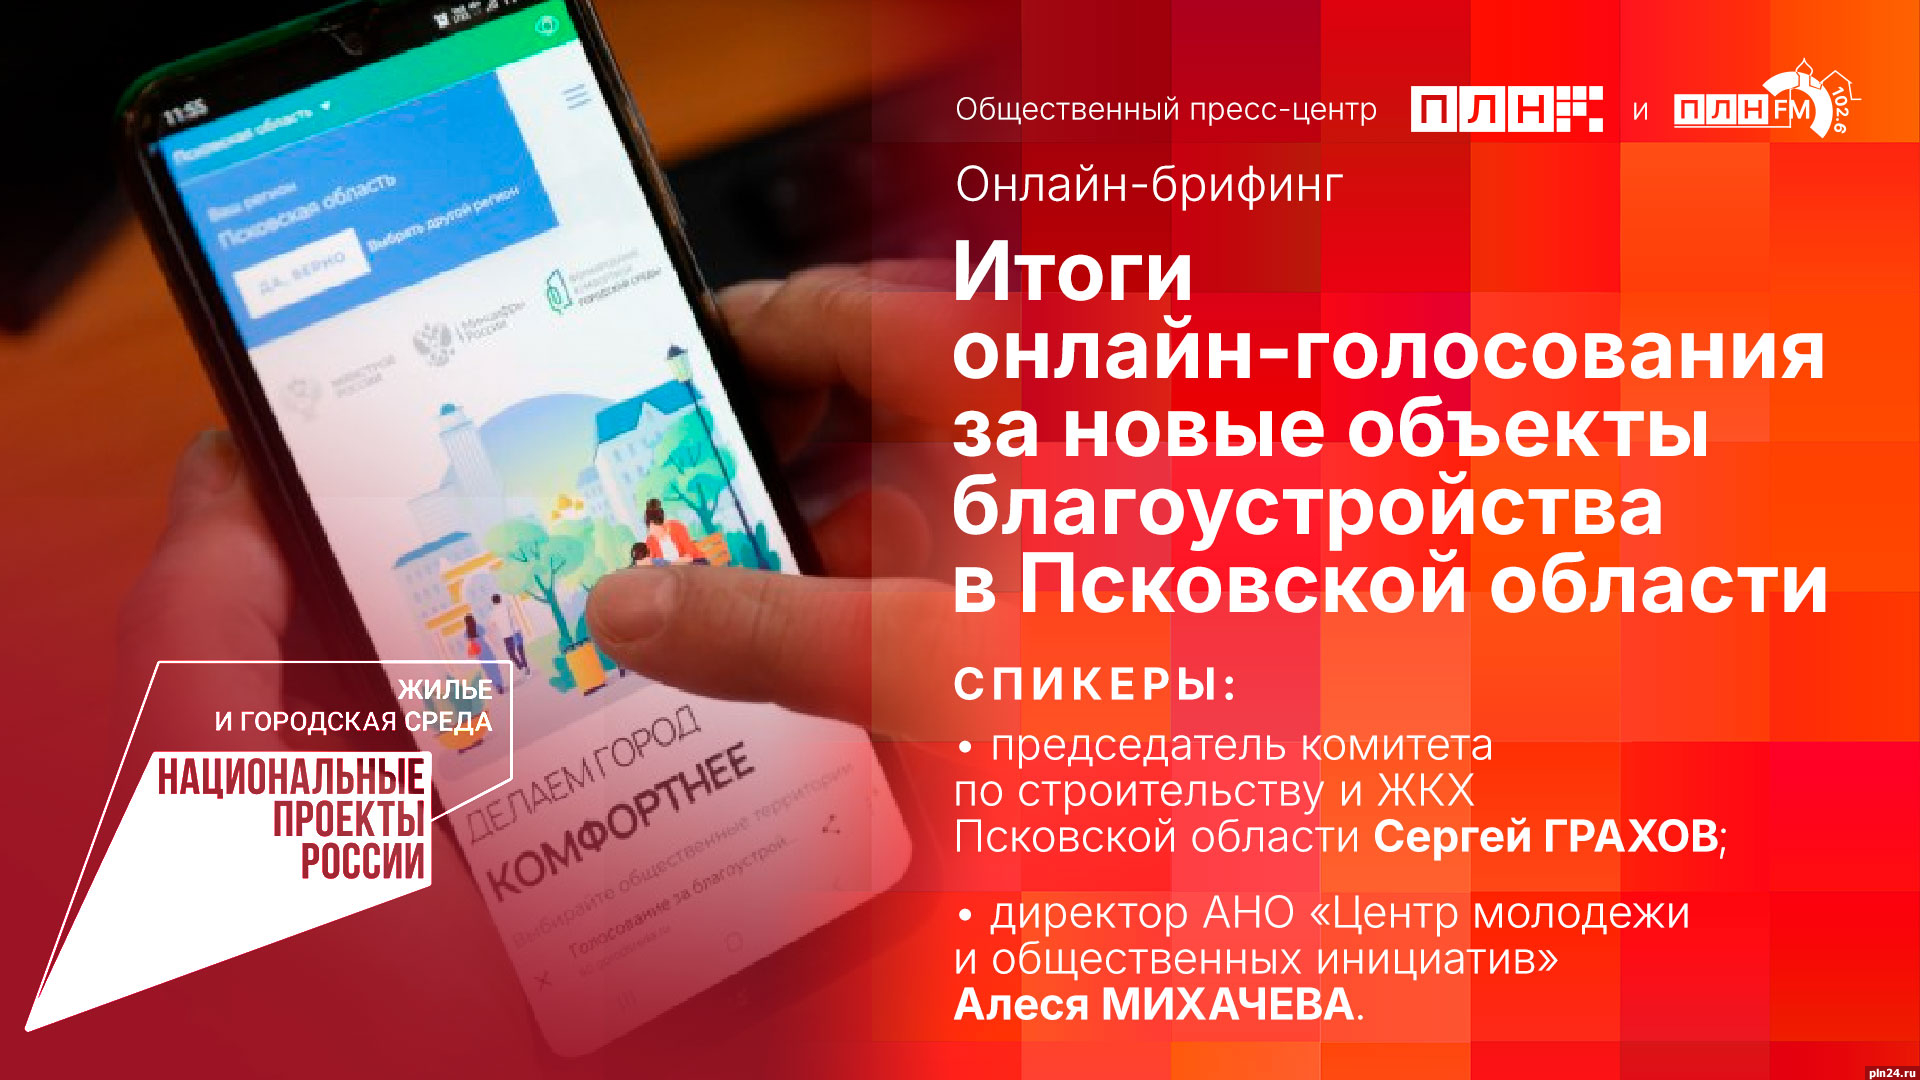 Начинается видеотрансляция брифинга об итогах голосования за новые объекты благоустройства в Псковской области